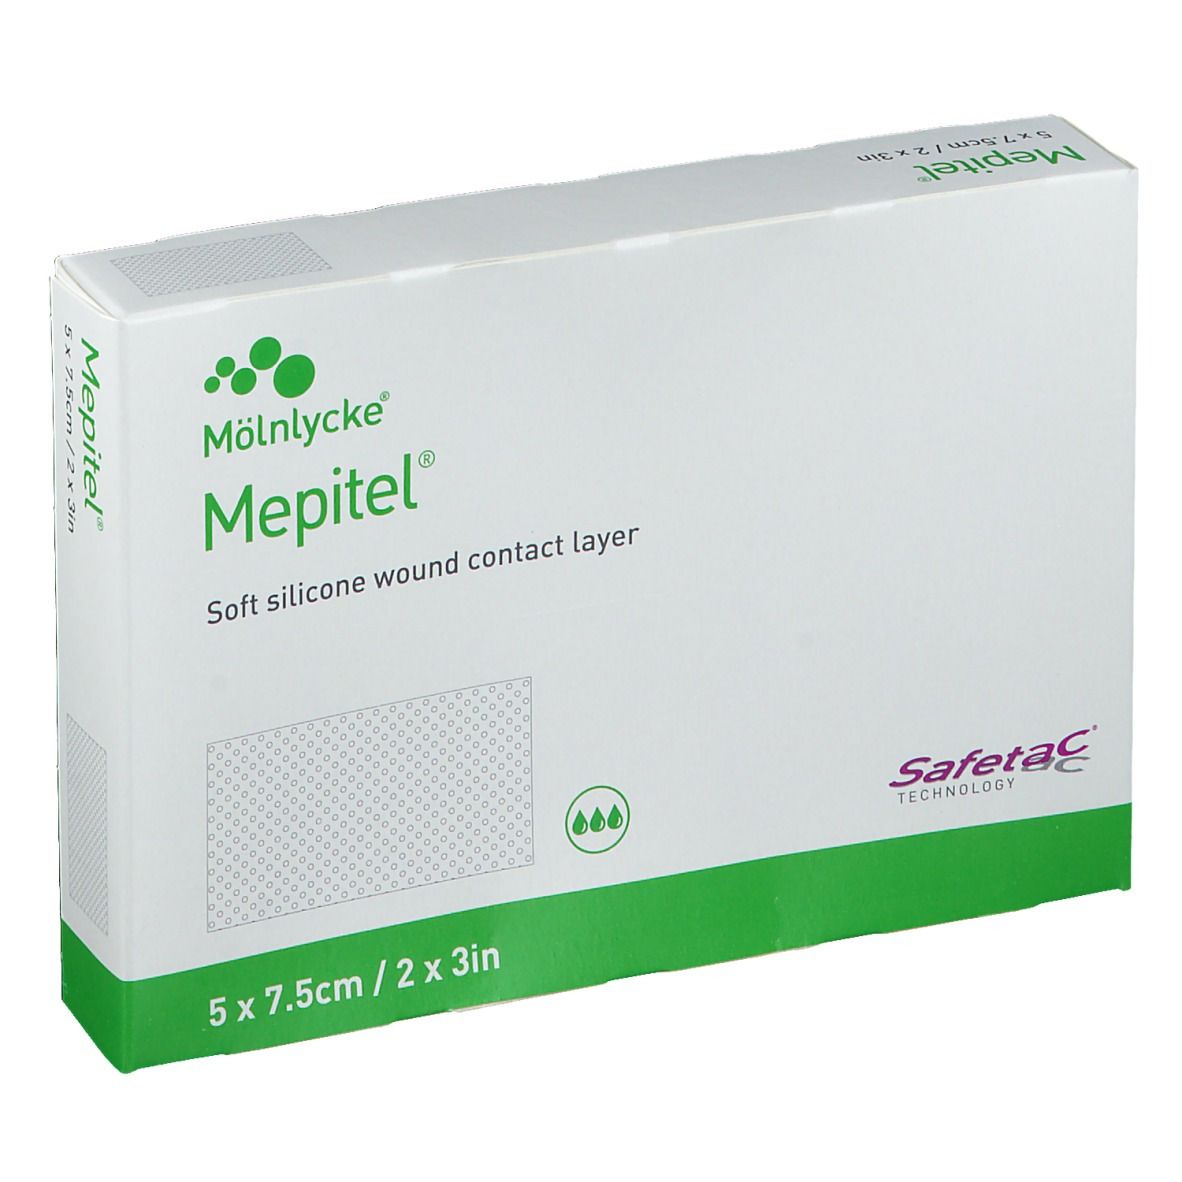 Mepitel® 5 x 7.5cm